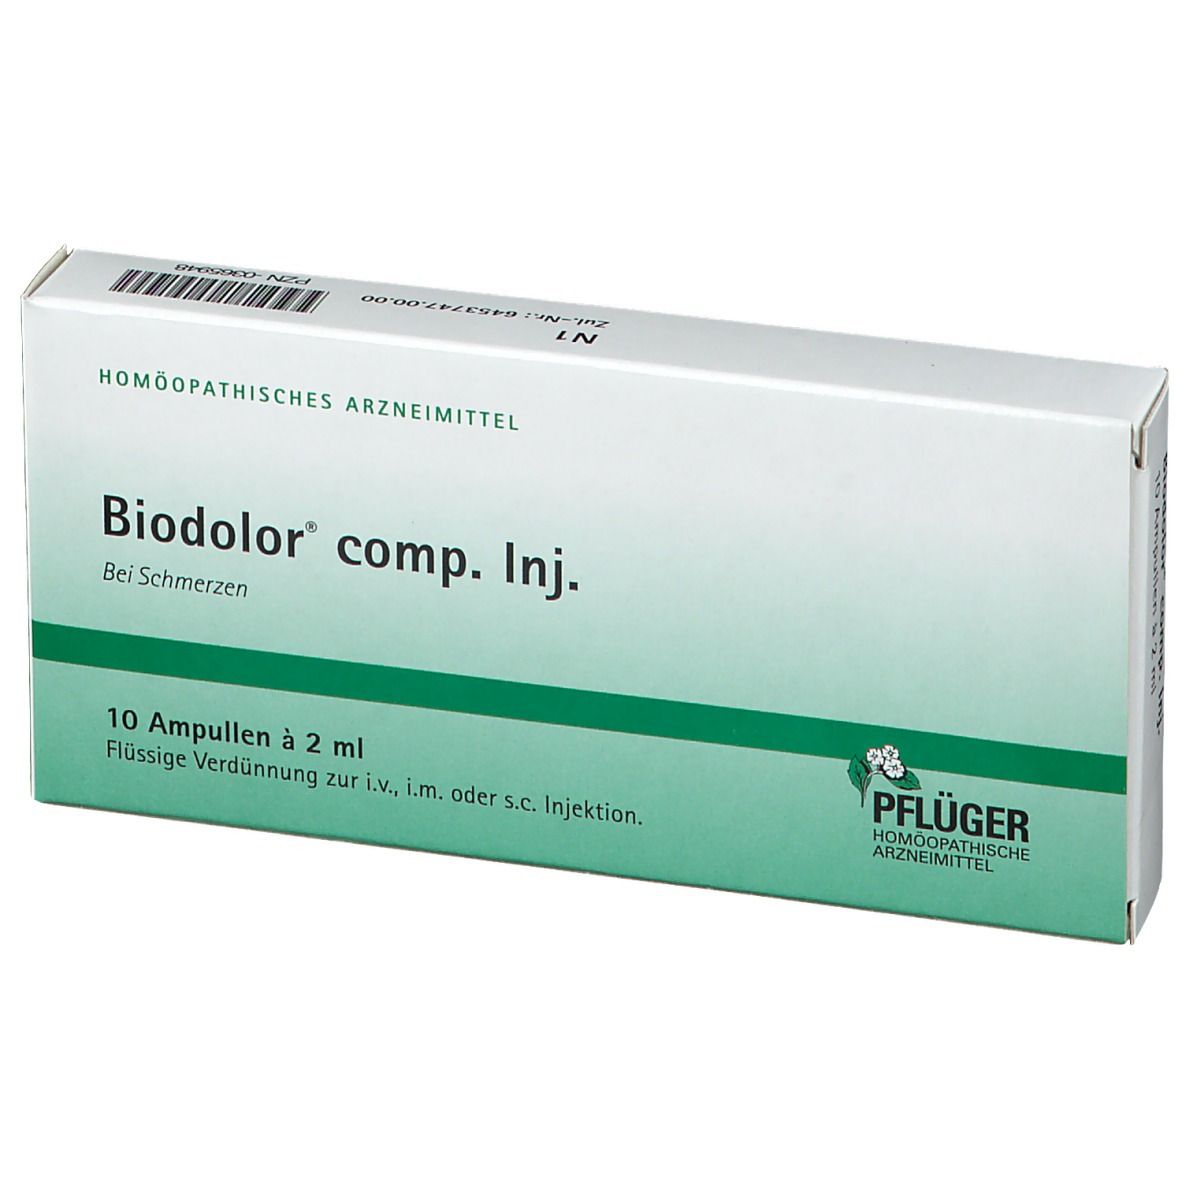 Biodolor® comp. Inj.